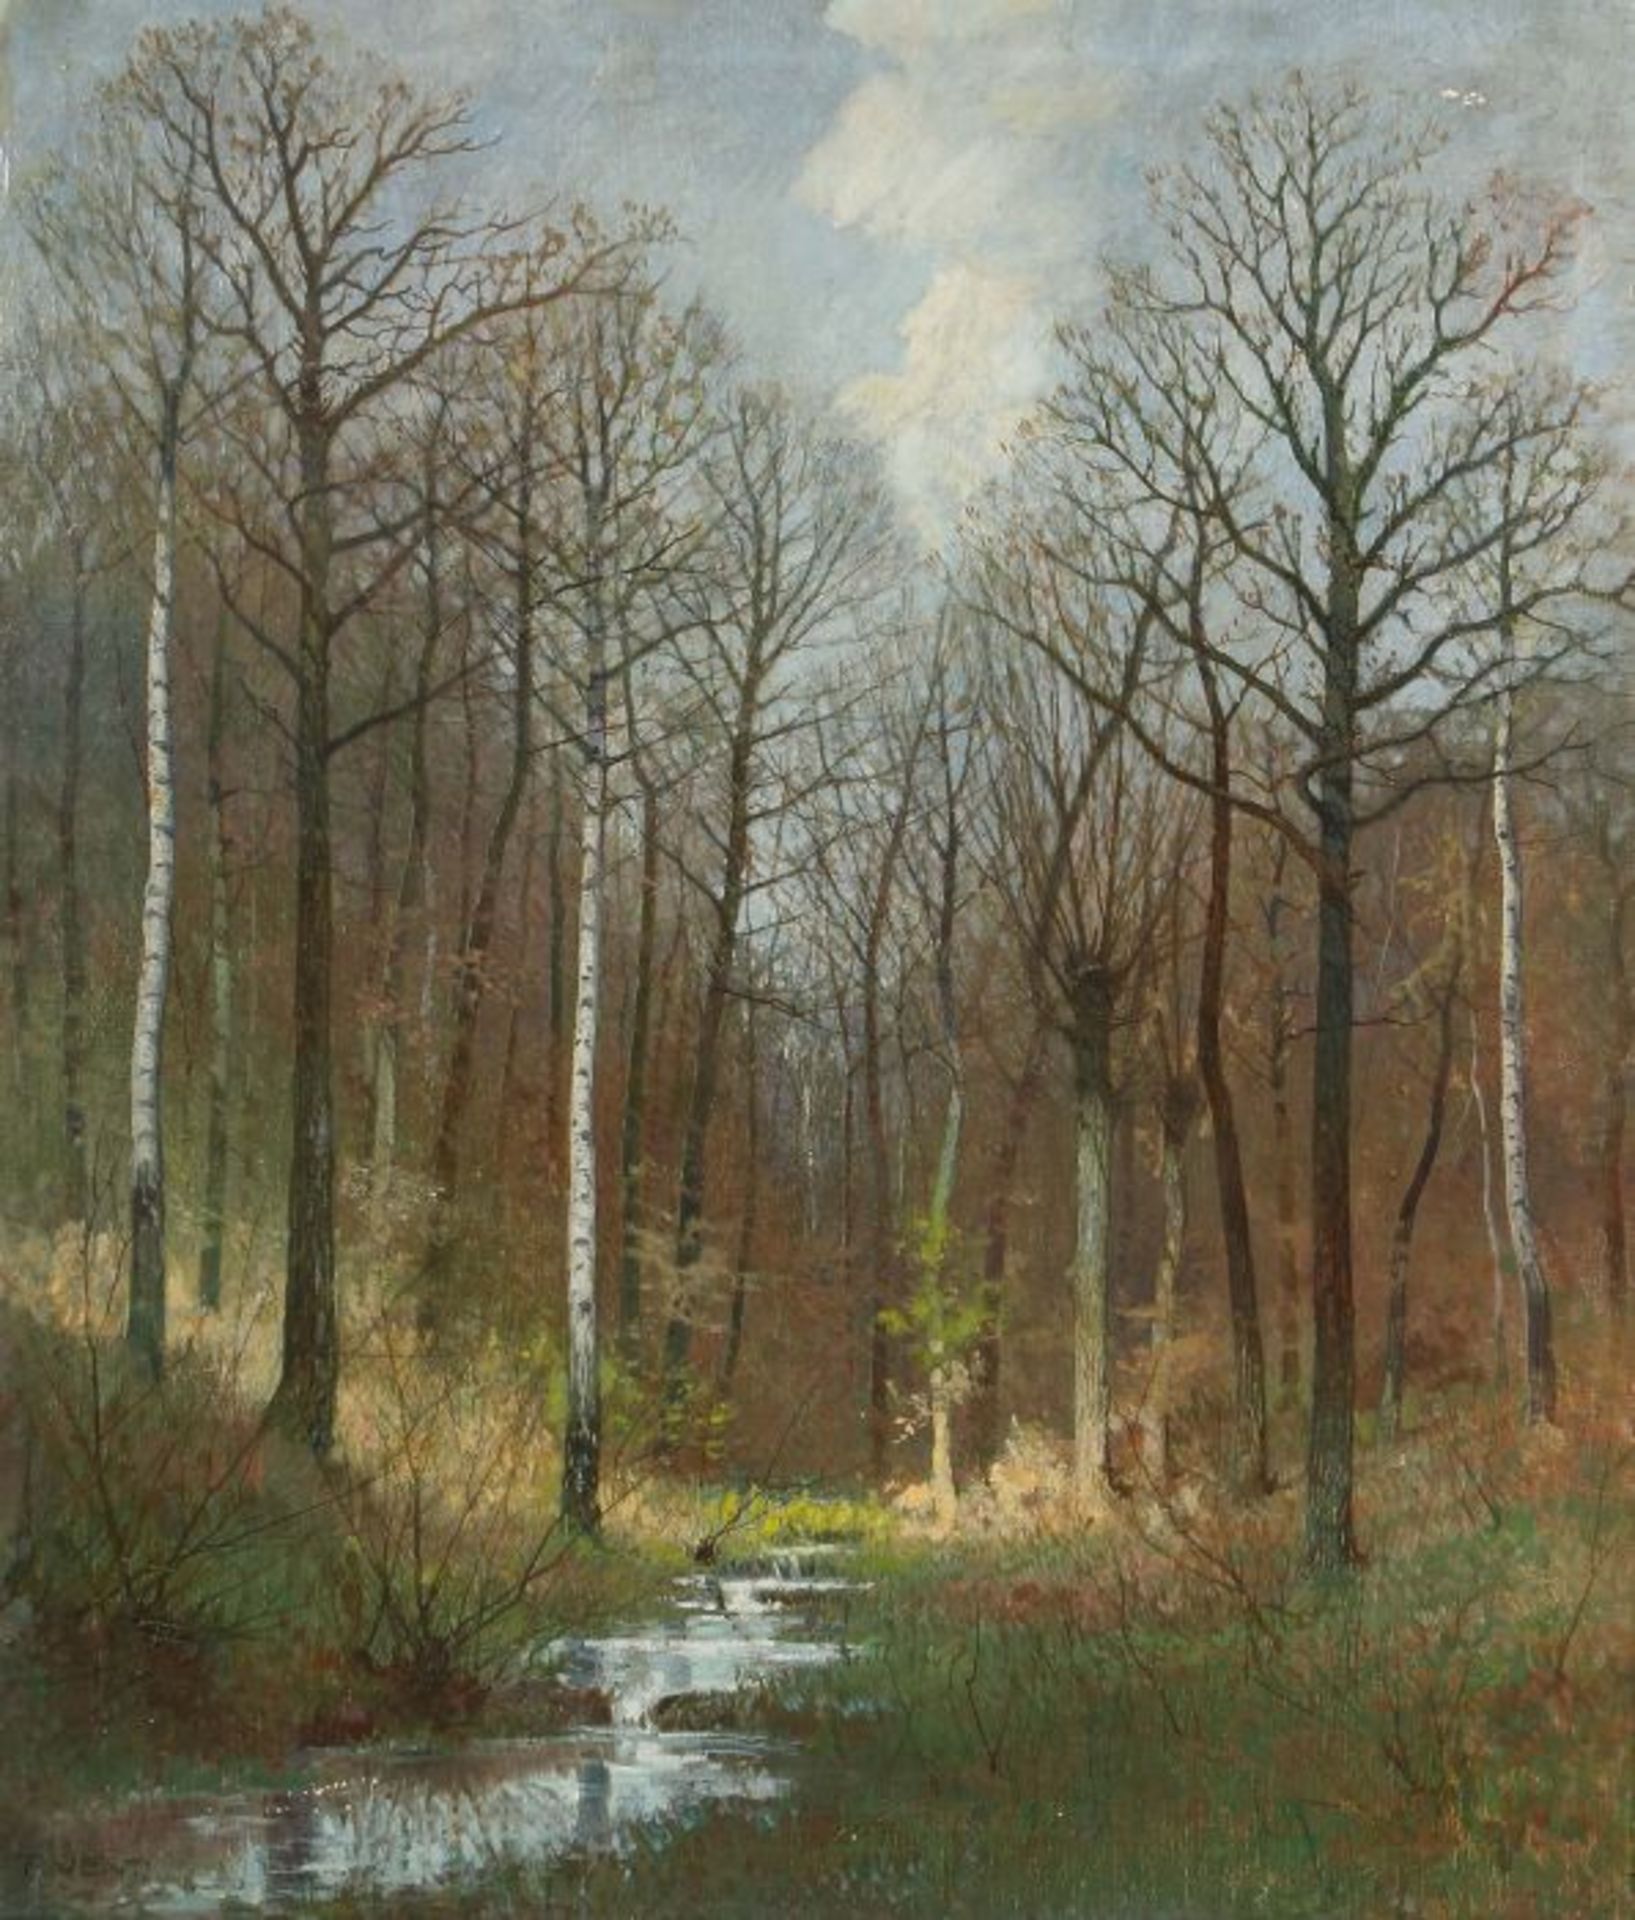 Vent, Rudolf Weimar 1880 - 1948 ebenda, deutscher Landschaftsmaler. "Frühling im Birkenwald", mit